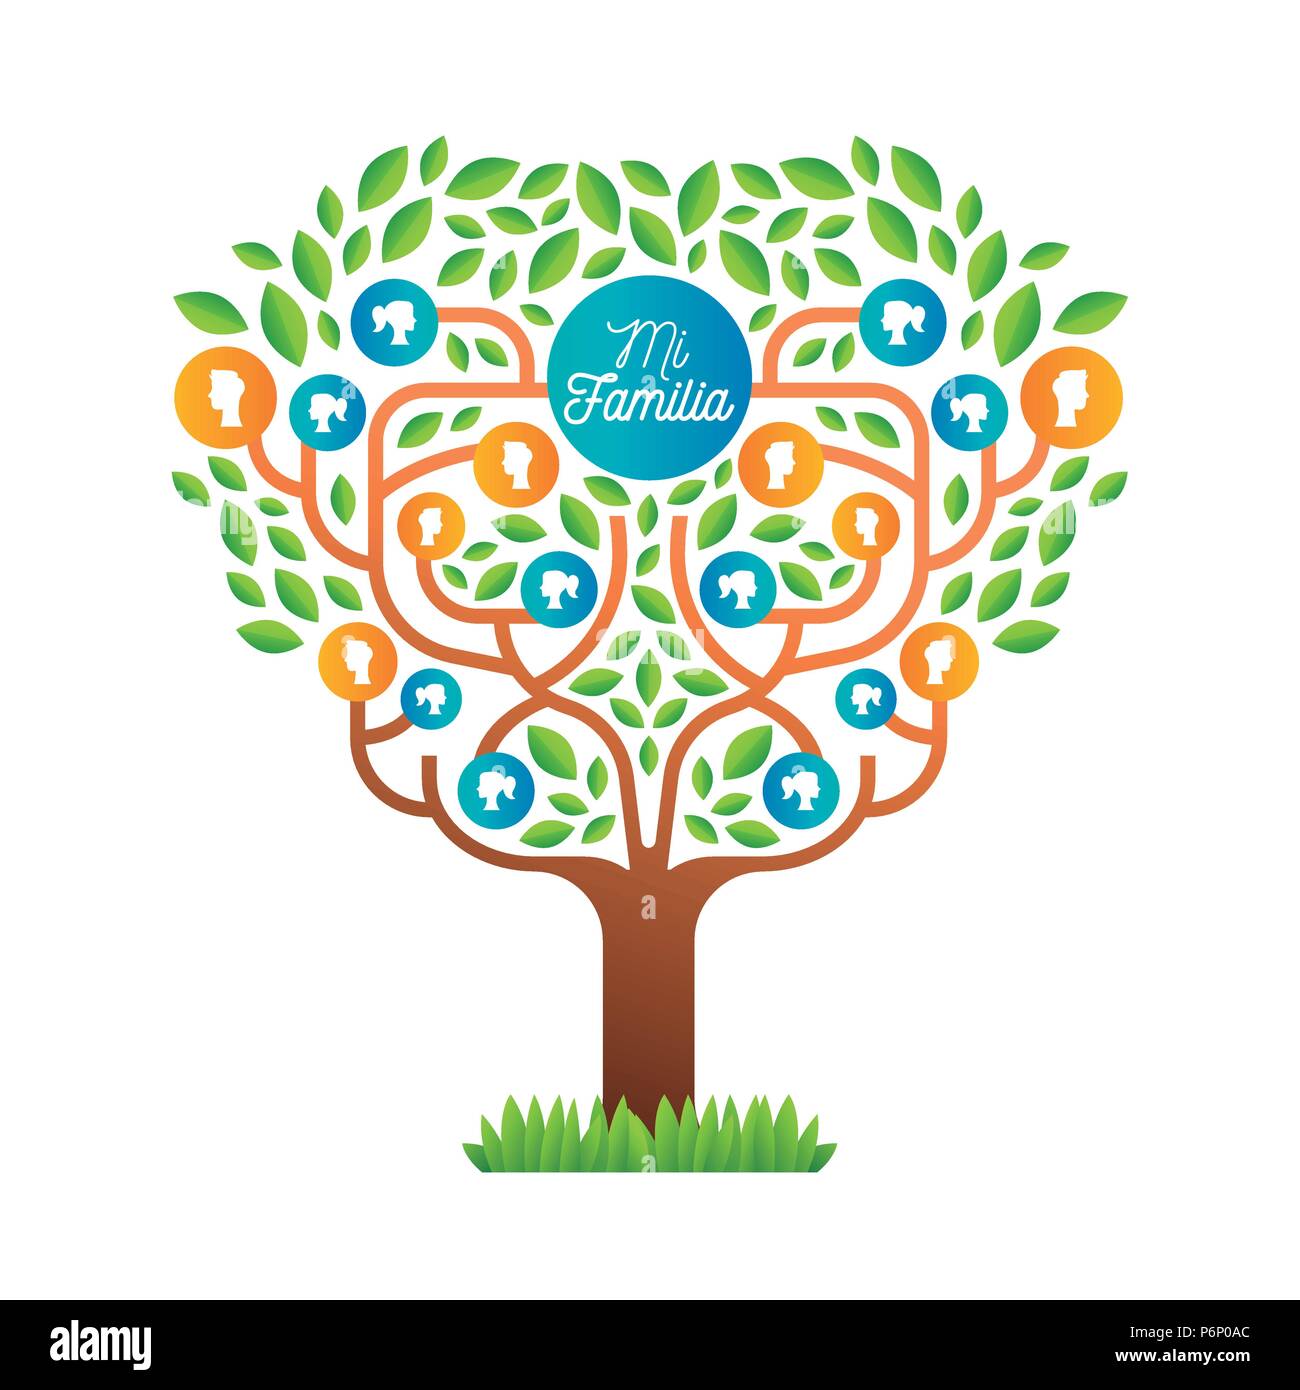 Big Family Tree Template in der spanischen Sprache, Illustration Konzept mit Leuten die Symbole und bunten grüne Blätter für das Leben Generationen Geschichte. EPS 10 vec Stock Vektor